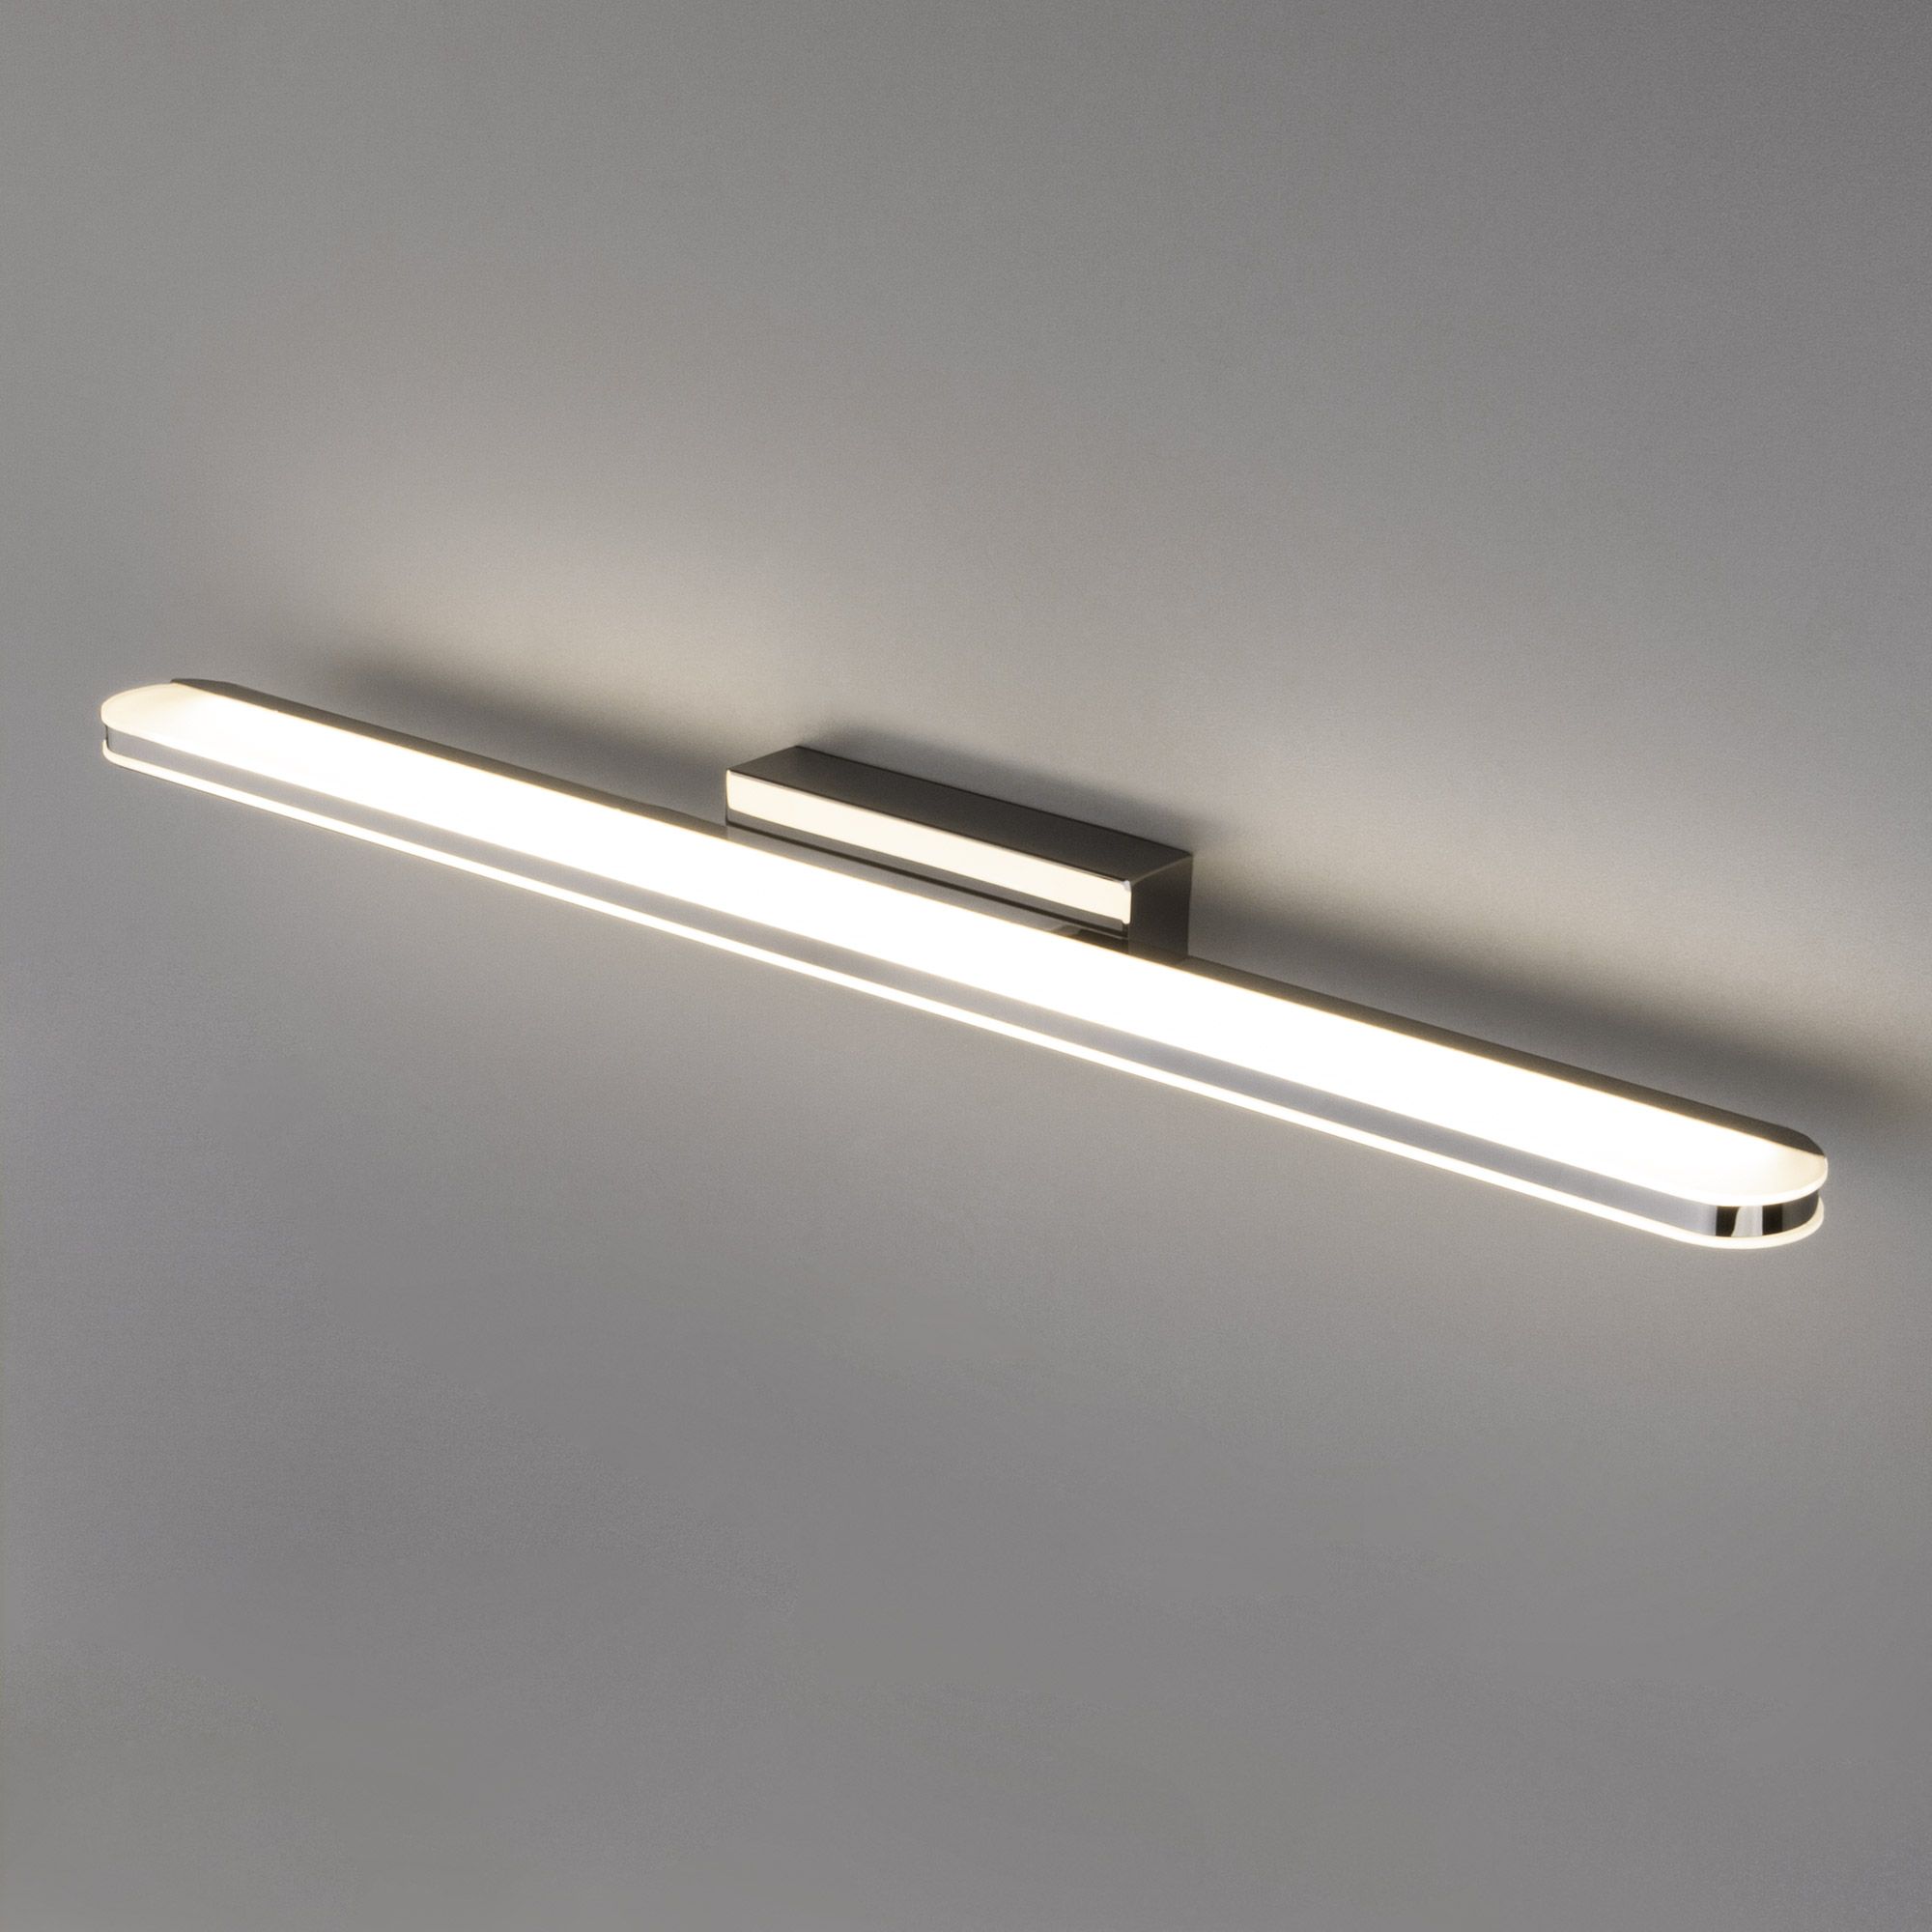 Настенный светодиодный светильник Tersa LED MRL LED 1080 хром